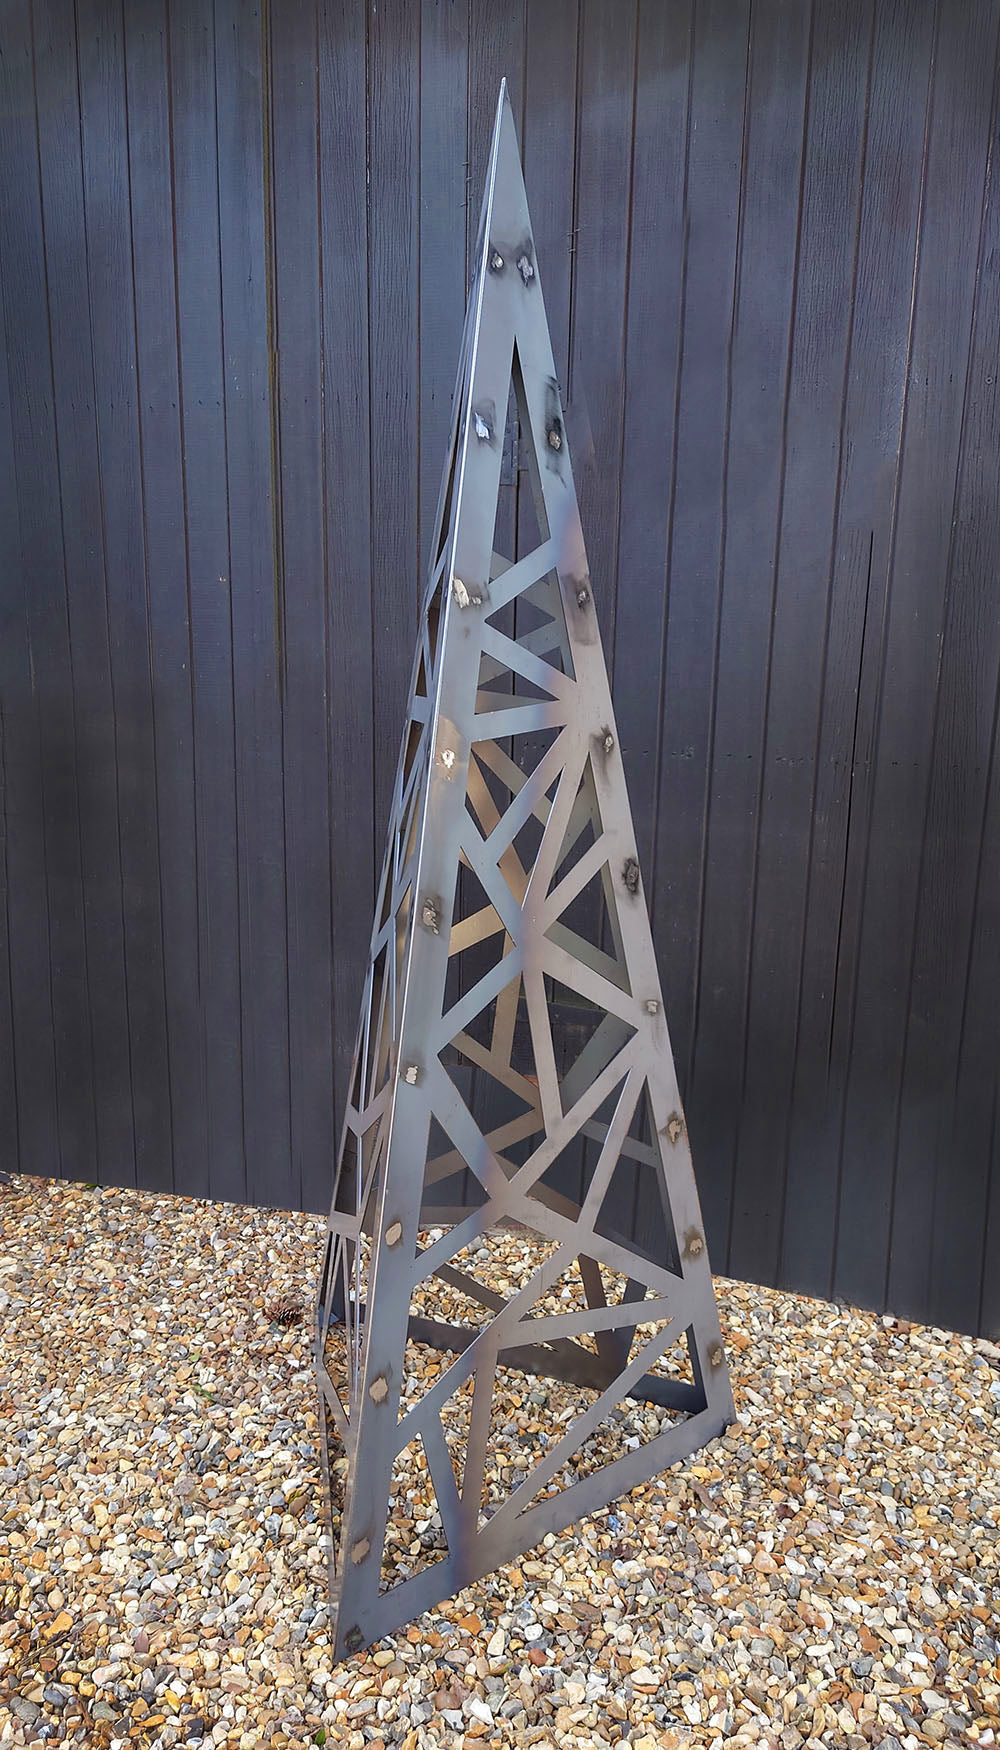 Giant Triangular Obelisk Sculpture Garden Feature - Indoor Outdoors